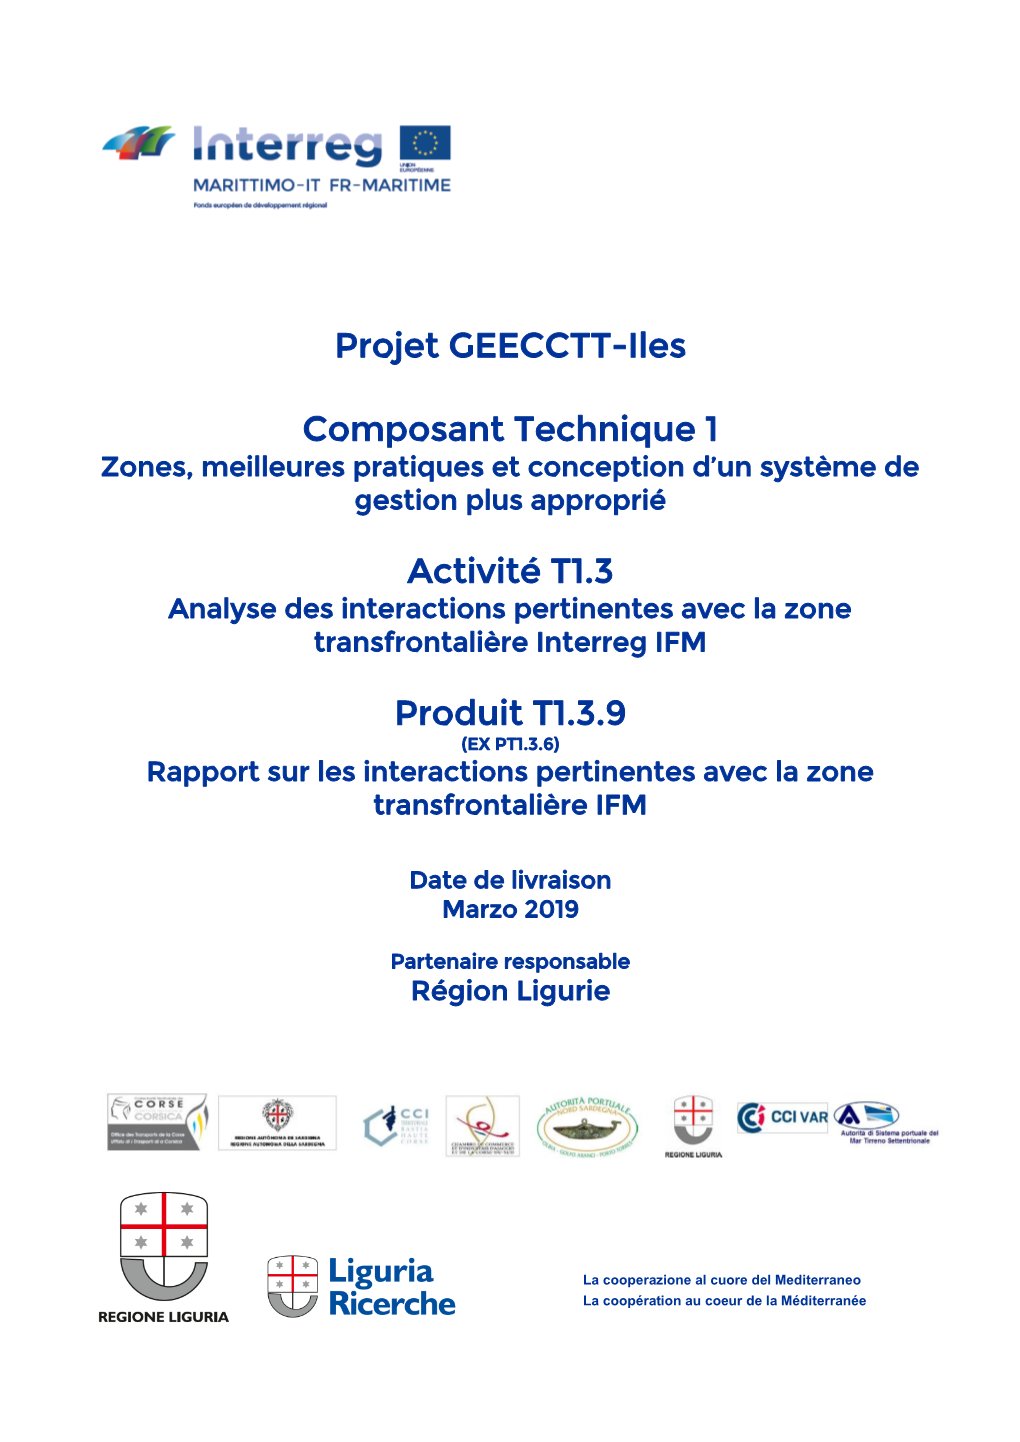 Projet GEECCTT-Iles Composant Technique 1 Activité T1.3 Produit